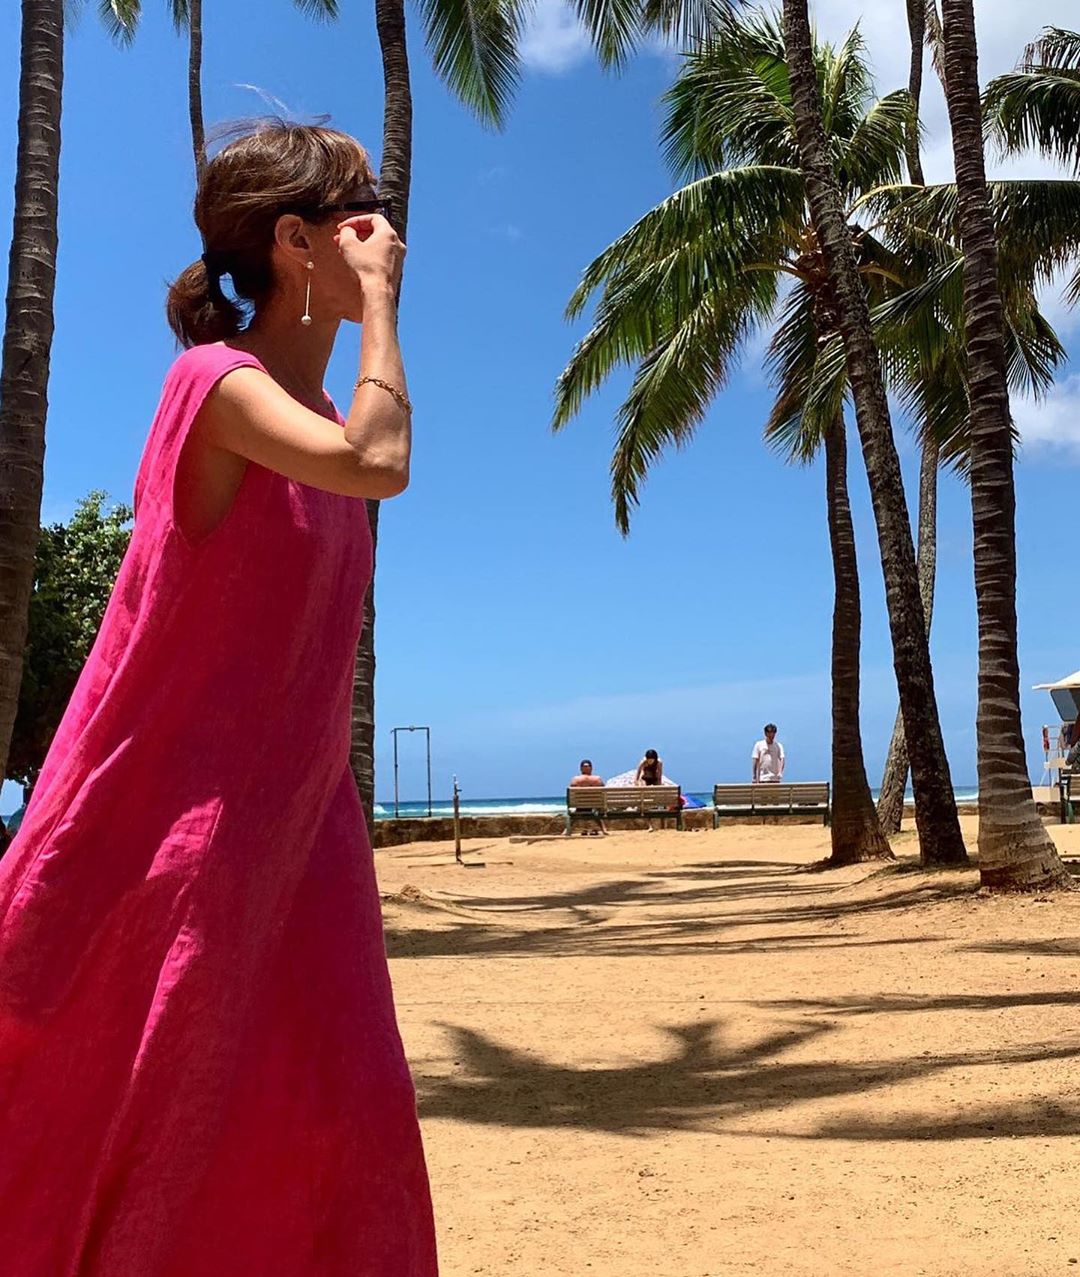 @佐々木敬子: 今日もいい1日でした ありがとう Hawaii MYLANのpinkのリネンワンピース着てマイランのお店の前のビーチにて…この